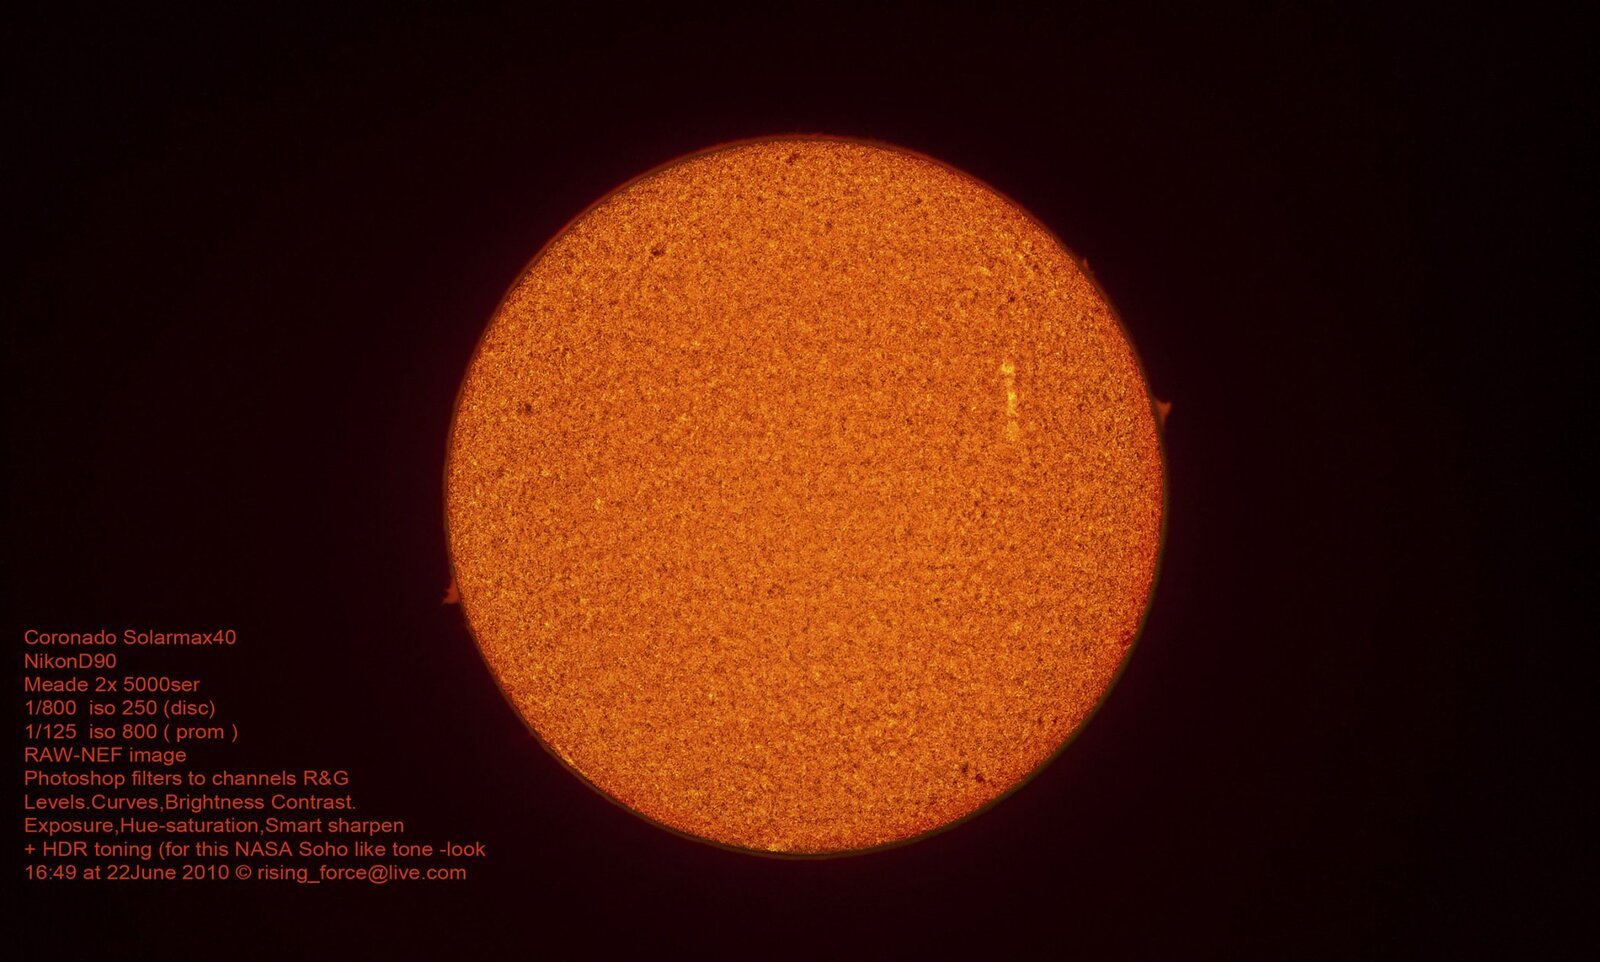 Ηλιακός δίσκος με προεξοχές 22 Ιουν.2010 Hdr